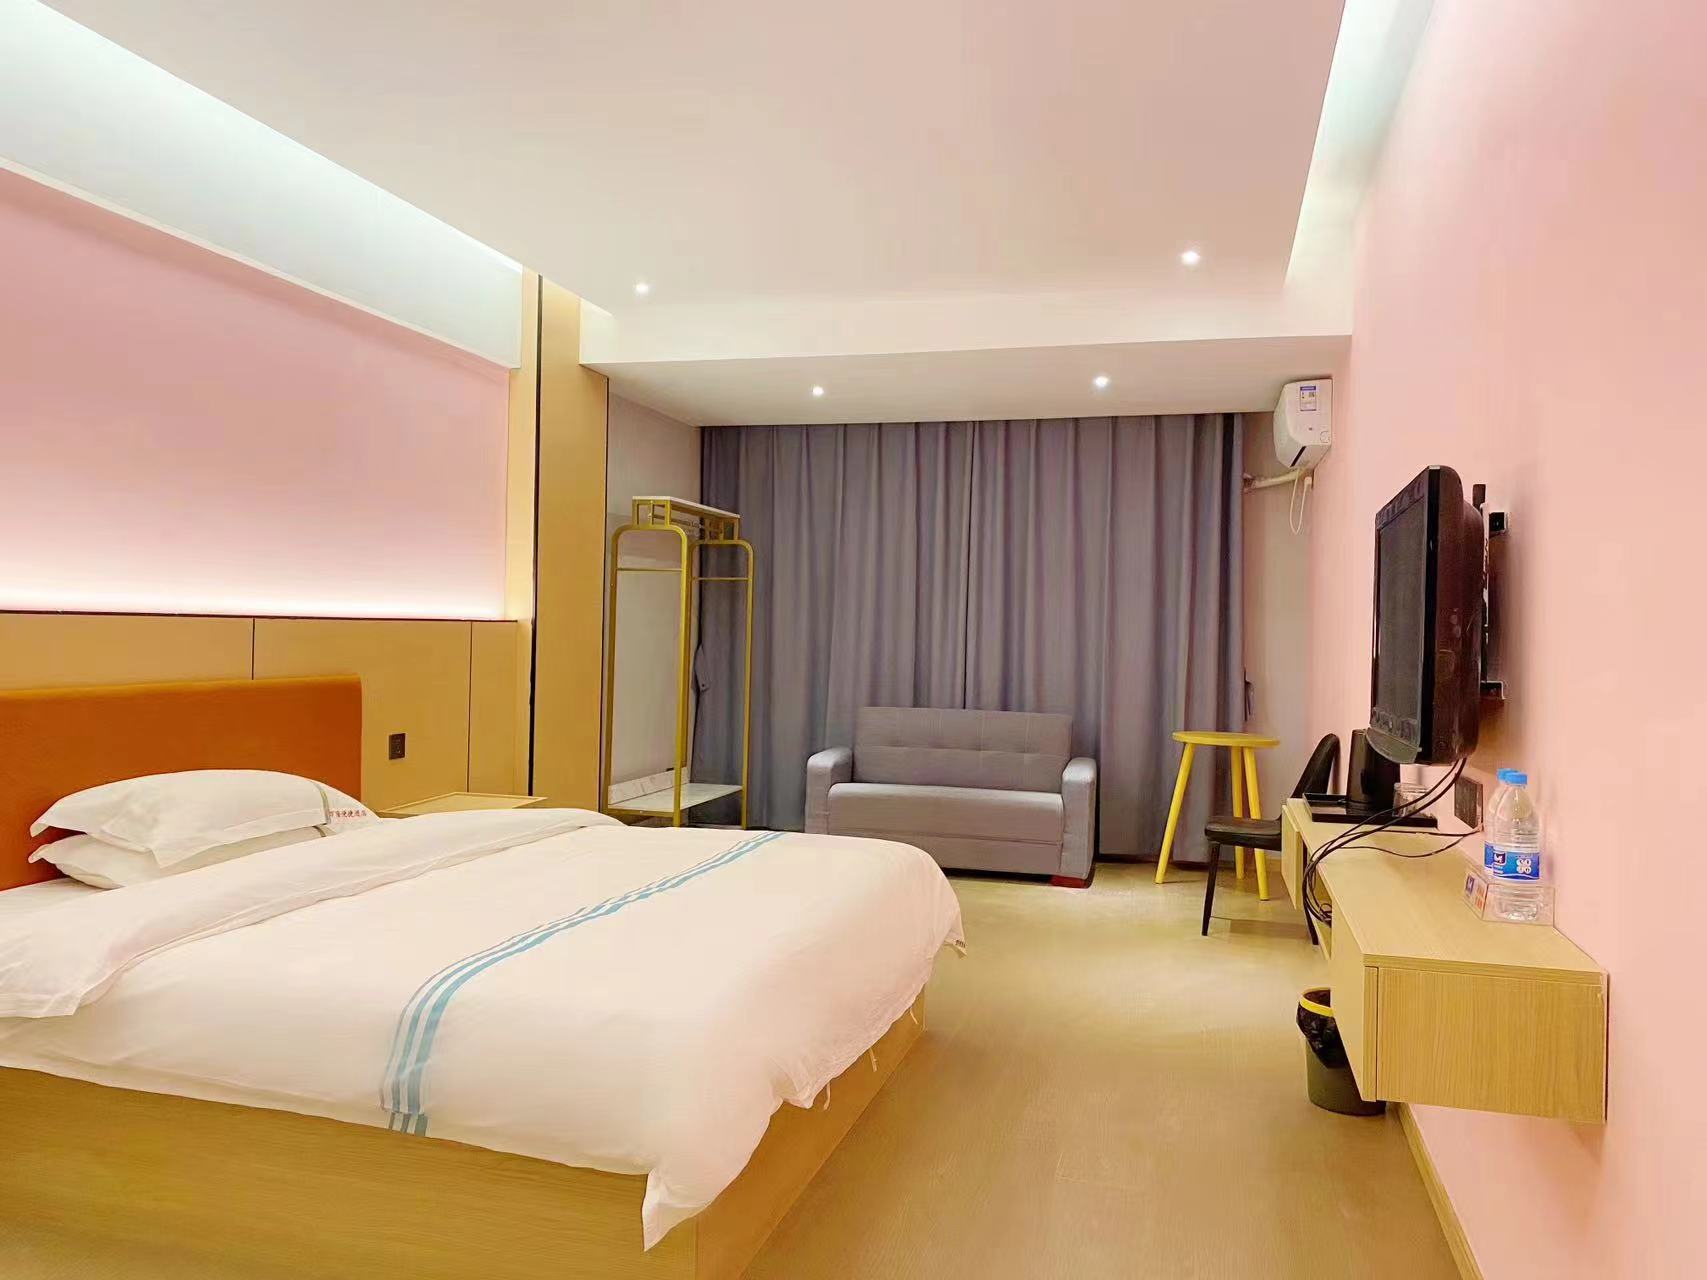 酒店原来叫万隆便捷酒店现在重新升级装修了环境很好。全部床，床垫，电视柜，窗帘都换了新的。卫生间换了智